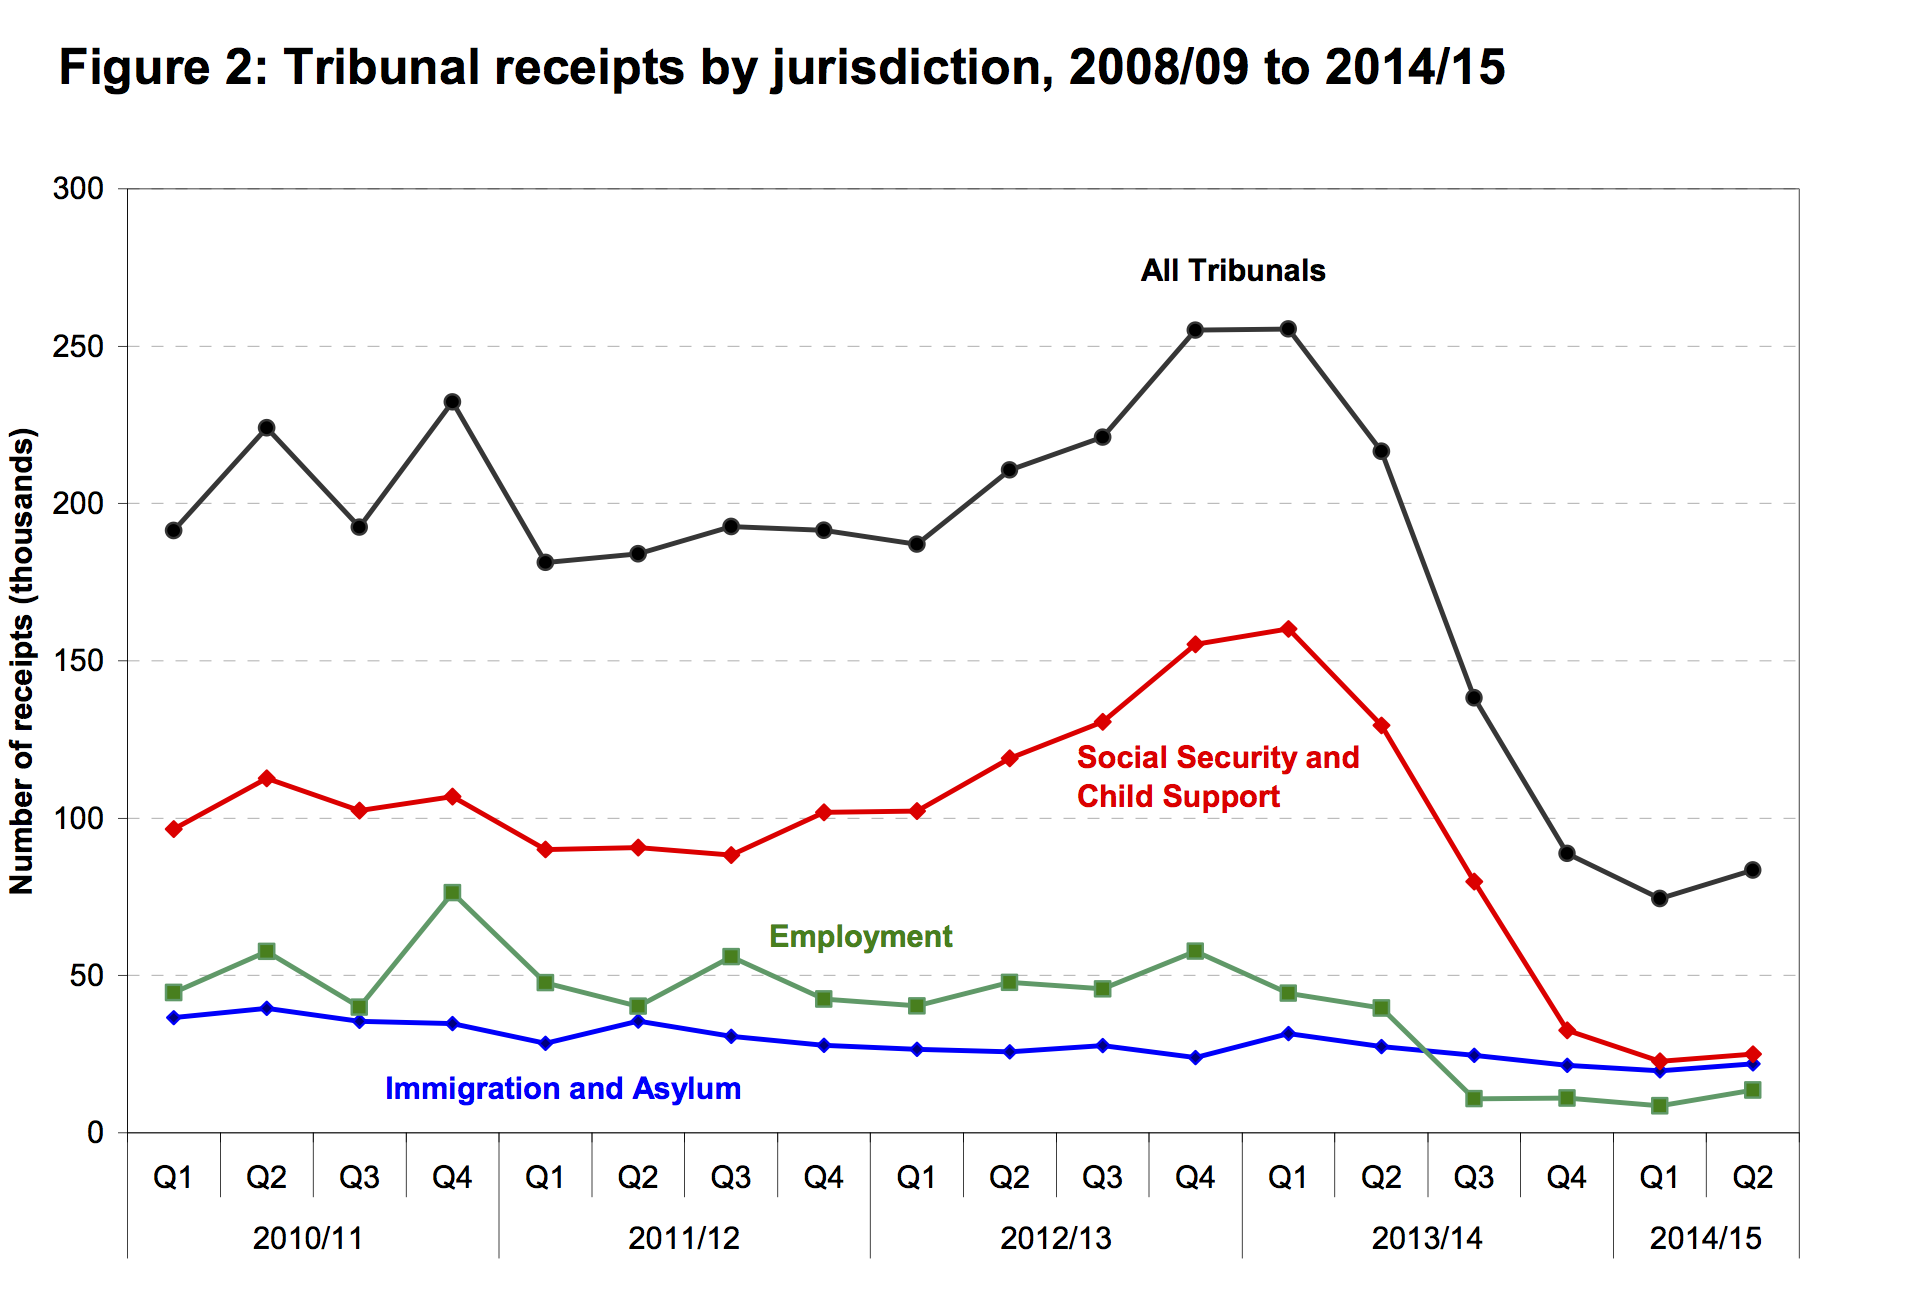 Tribunal Receipts by jurisdiction 2009-14/15